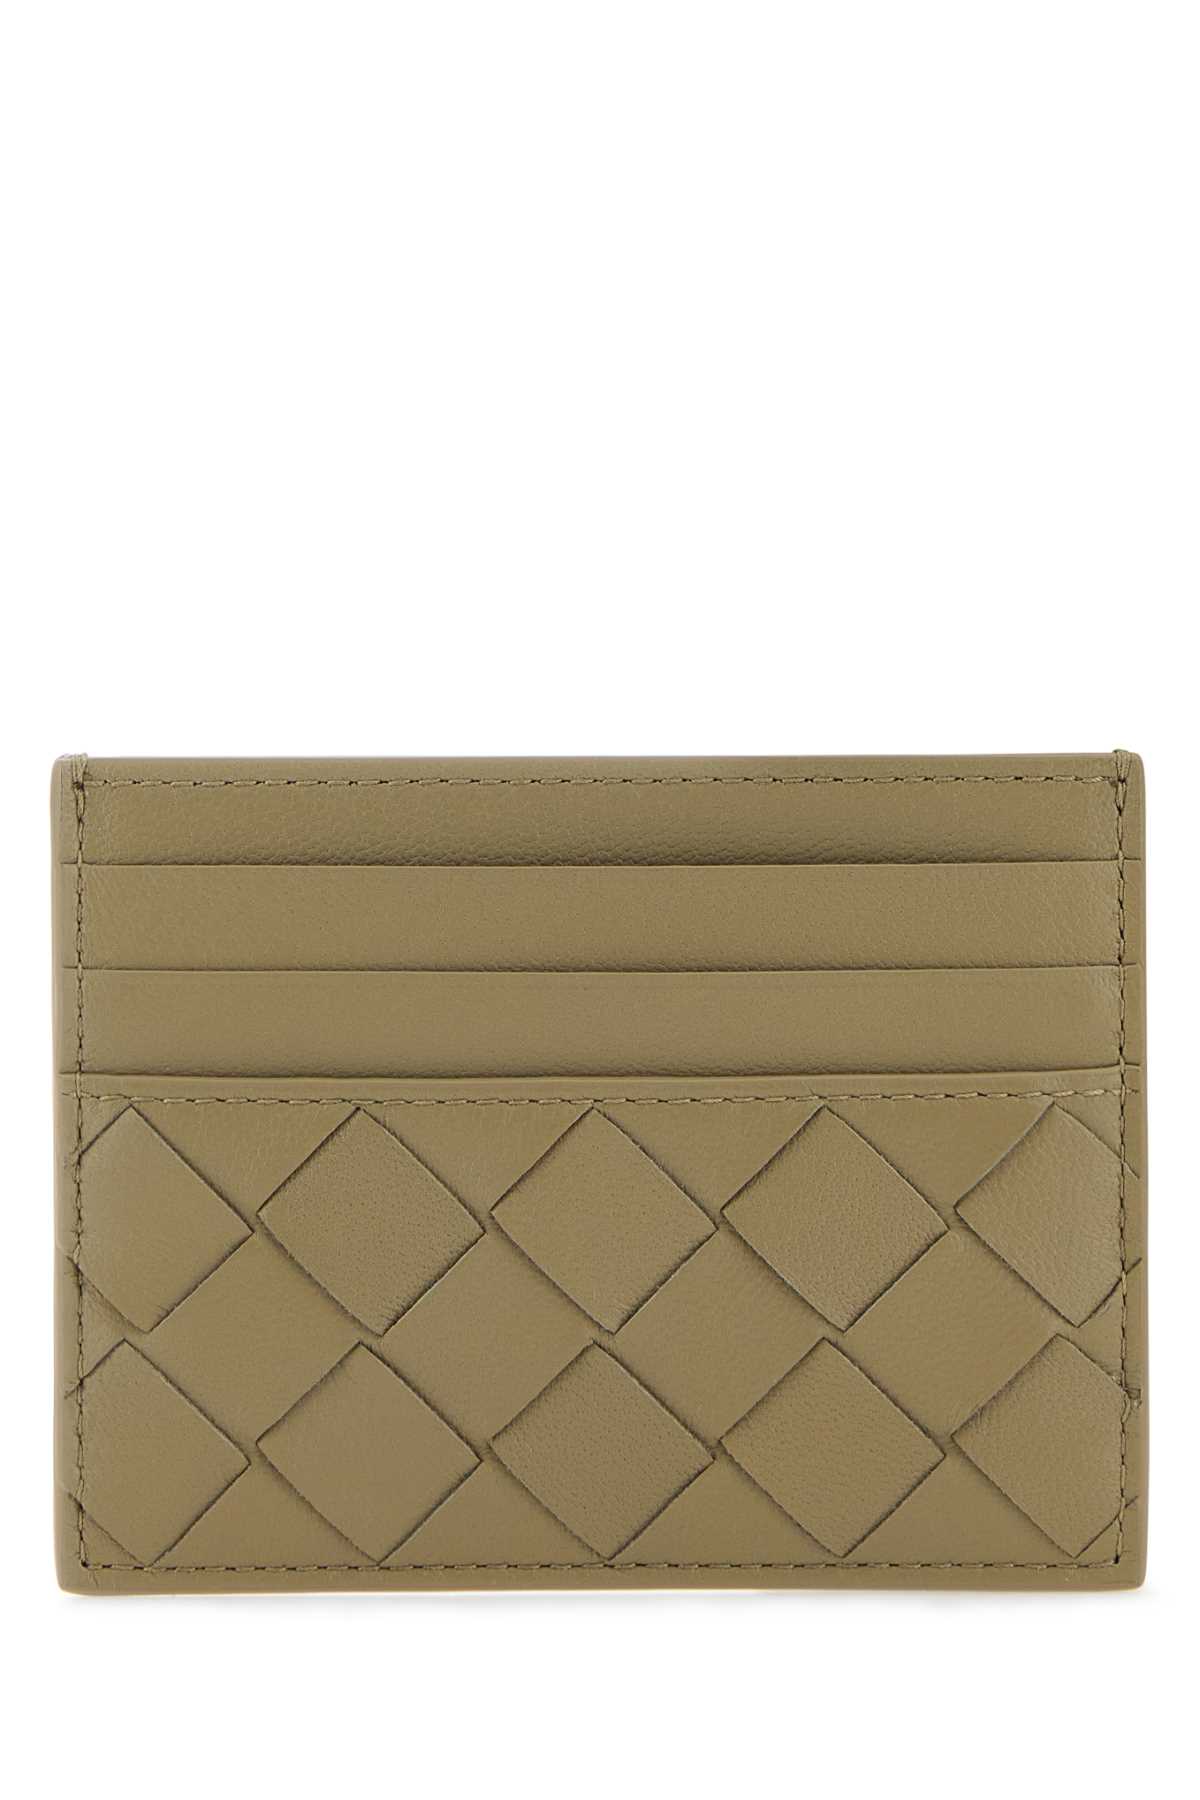 Shop Bottega Veneta Dove Grey Nappa Leather Intrecciato Card Holder In Taupegold